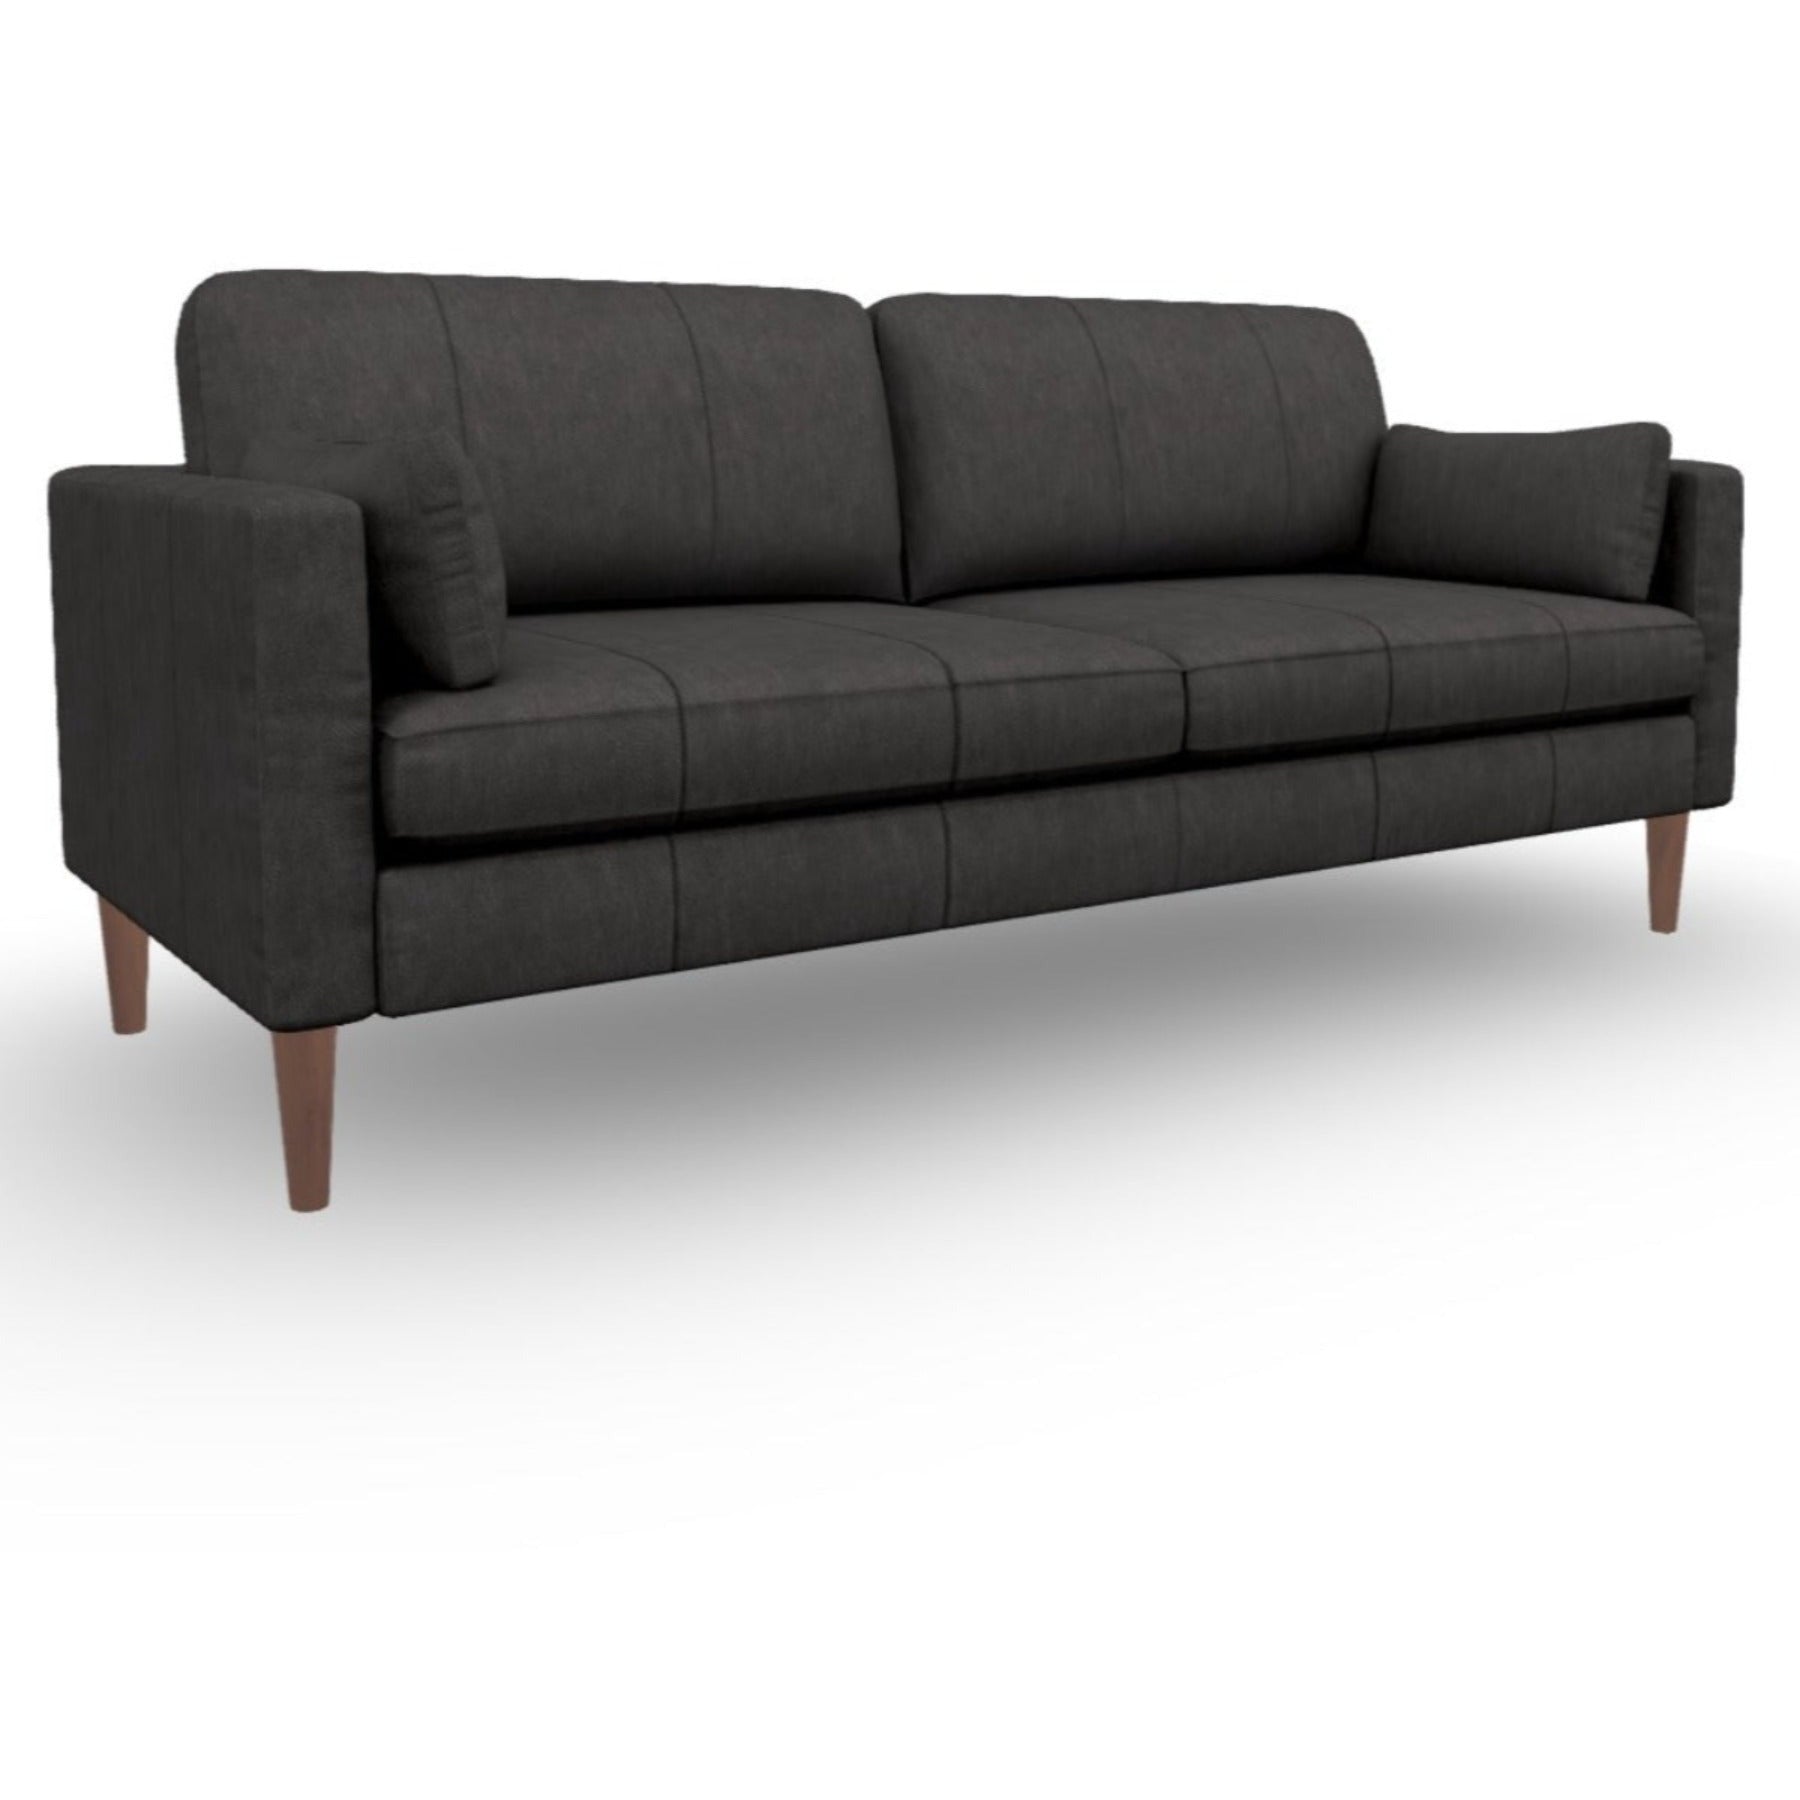 Trafton Leather Sofa Furniture Fair